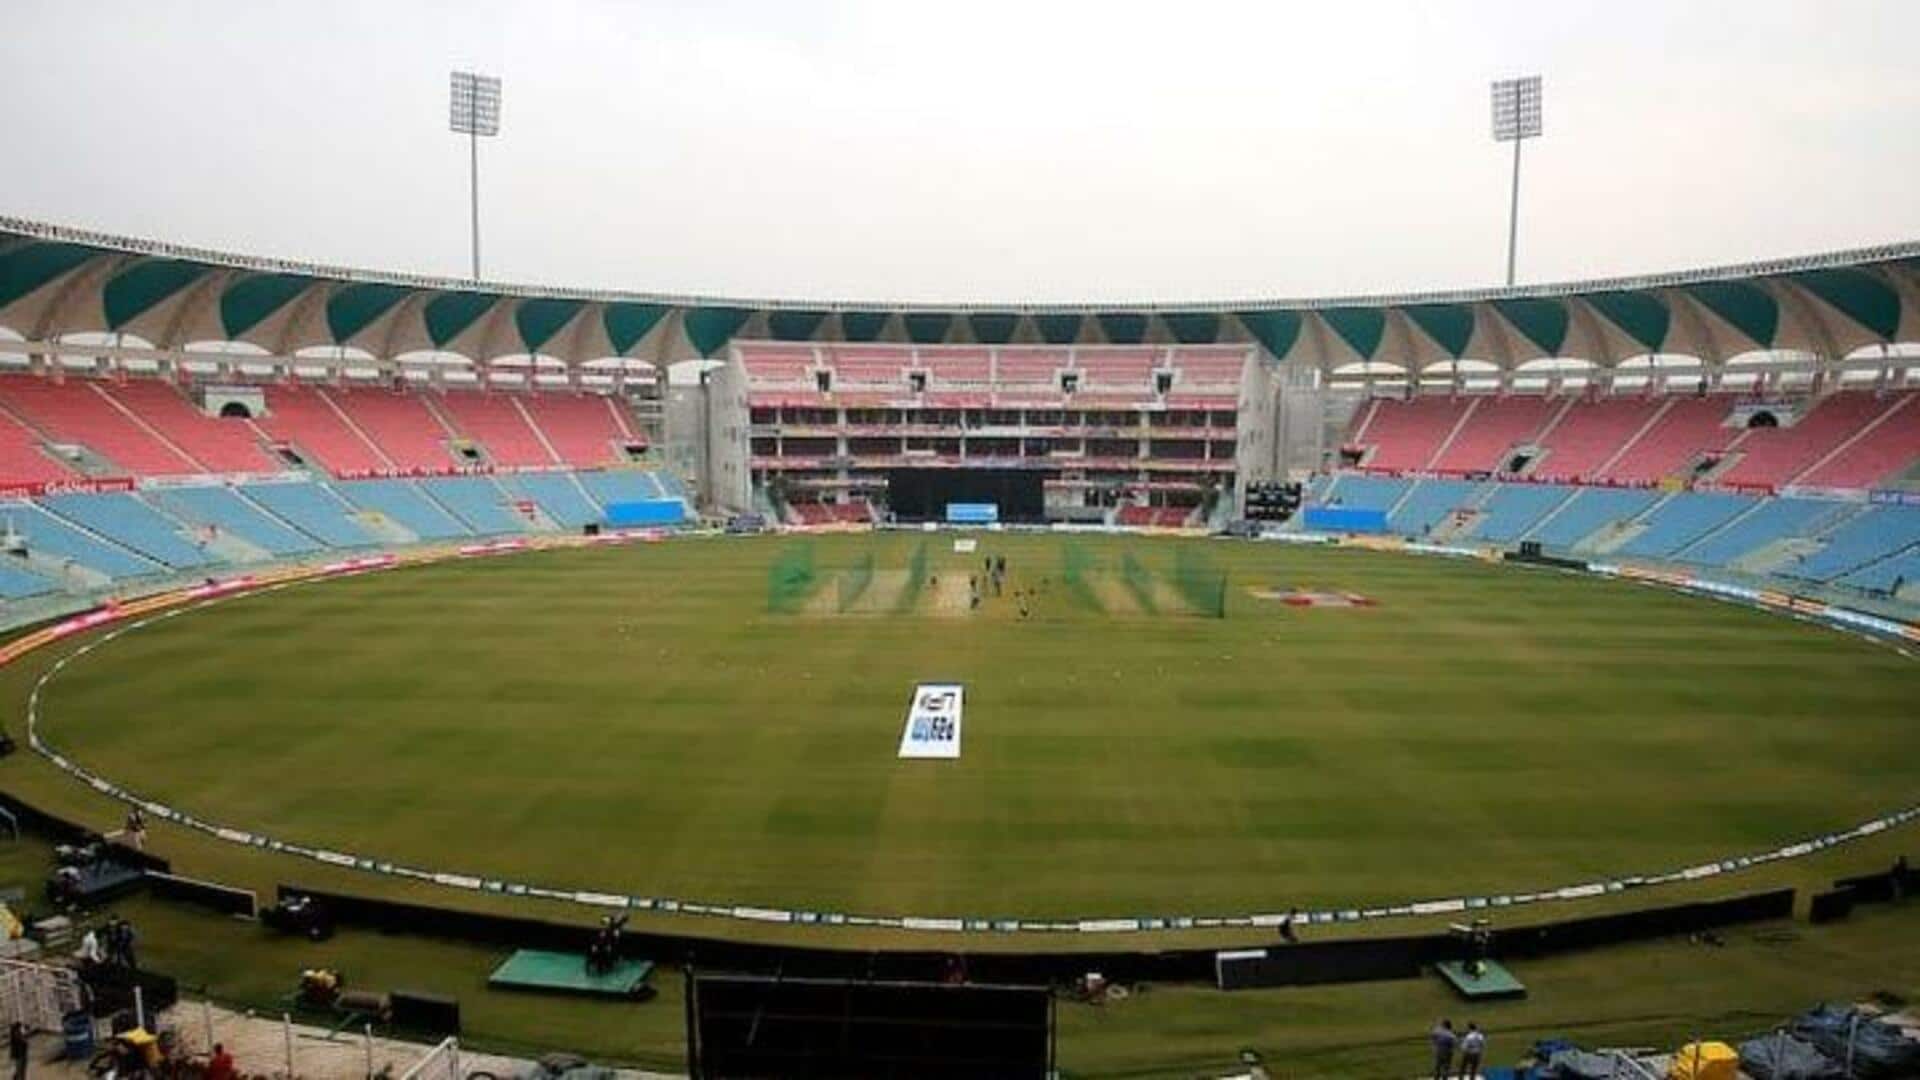 लखनऊ के अटल बिहारी वाजपेयी स्टेडियम में पहली बार खेला जाएगा IPL मुकाबला, जानिए रोचक आंकड़े 